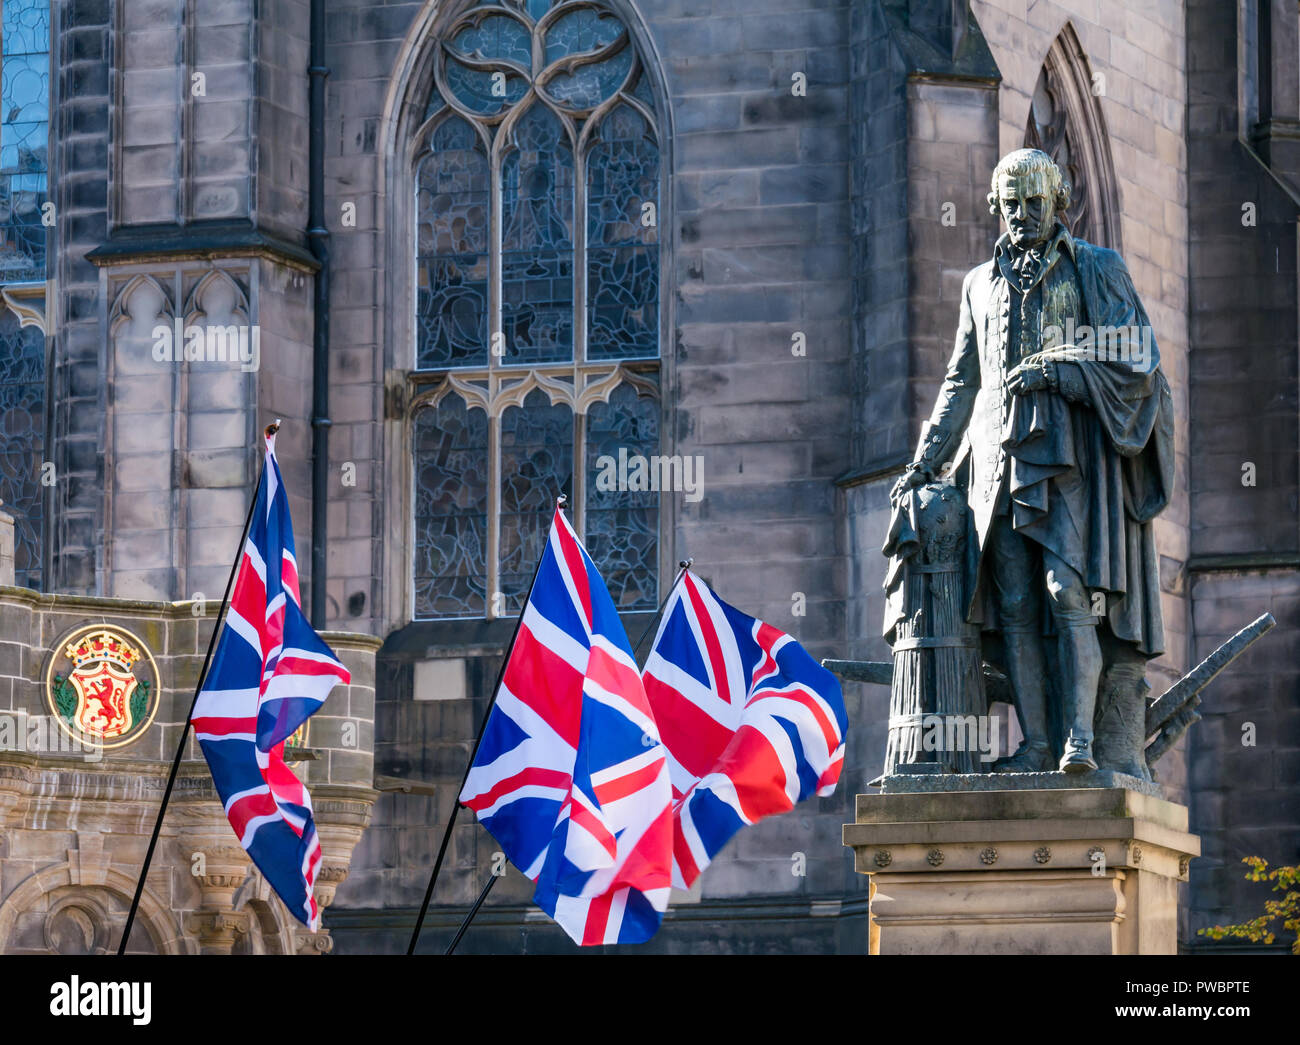 Union Jack drapeaux flottant à Adam Smith statue et la cathédrale St Giles, le tout sous une même bannière marche de l'indépendance 2108, Royal Mile, Édimbourg, Écosse, Royaume-Uni Banque D'Images